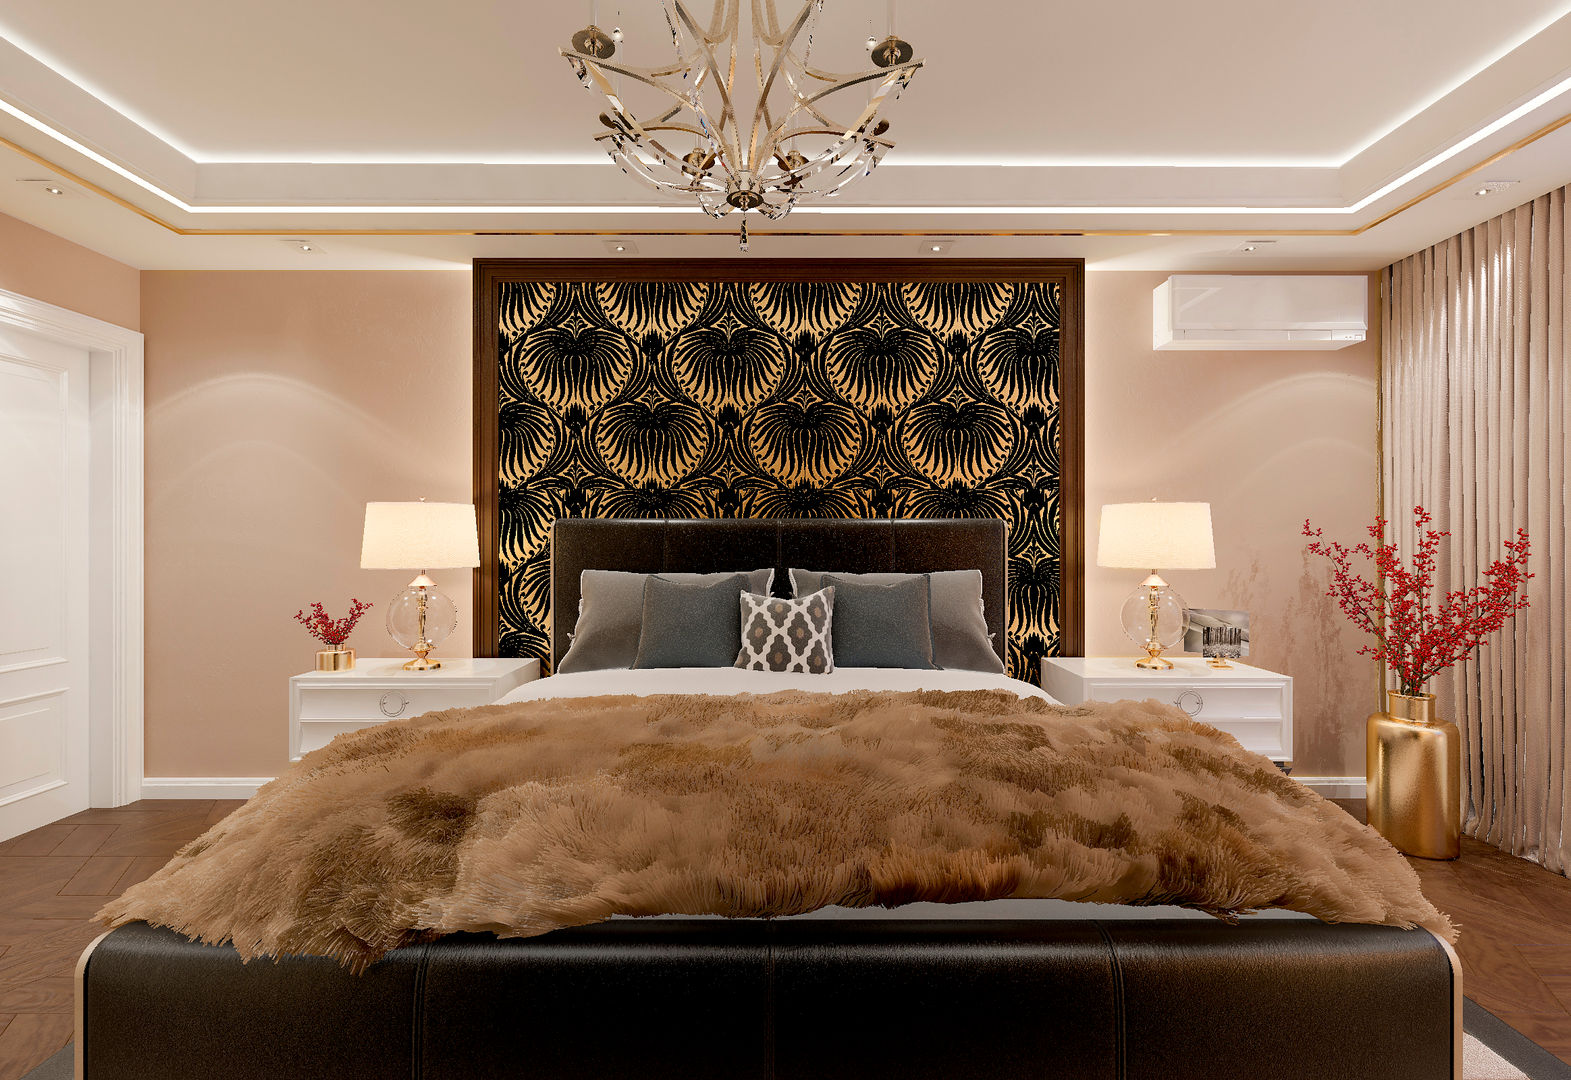 Спальня "Gold & fur", Студия дизайна Дарьи Одарюк Студия дизайна Дарьи Одарюк Cuartos de estilo clásico